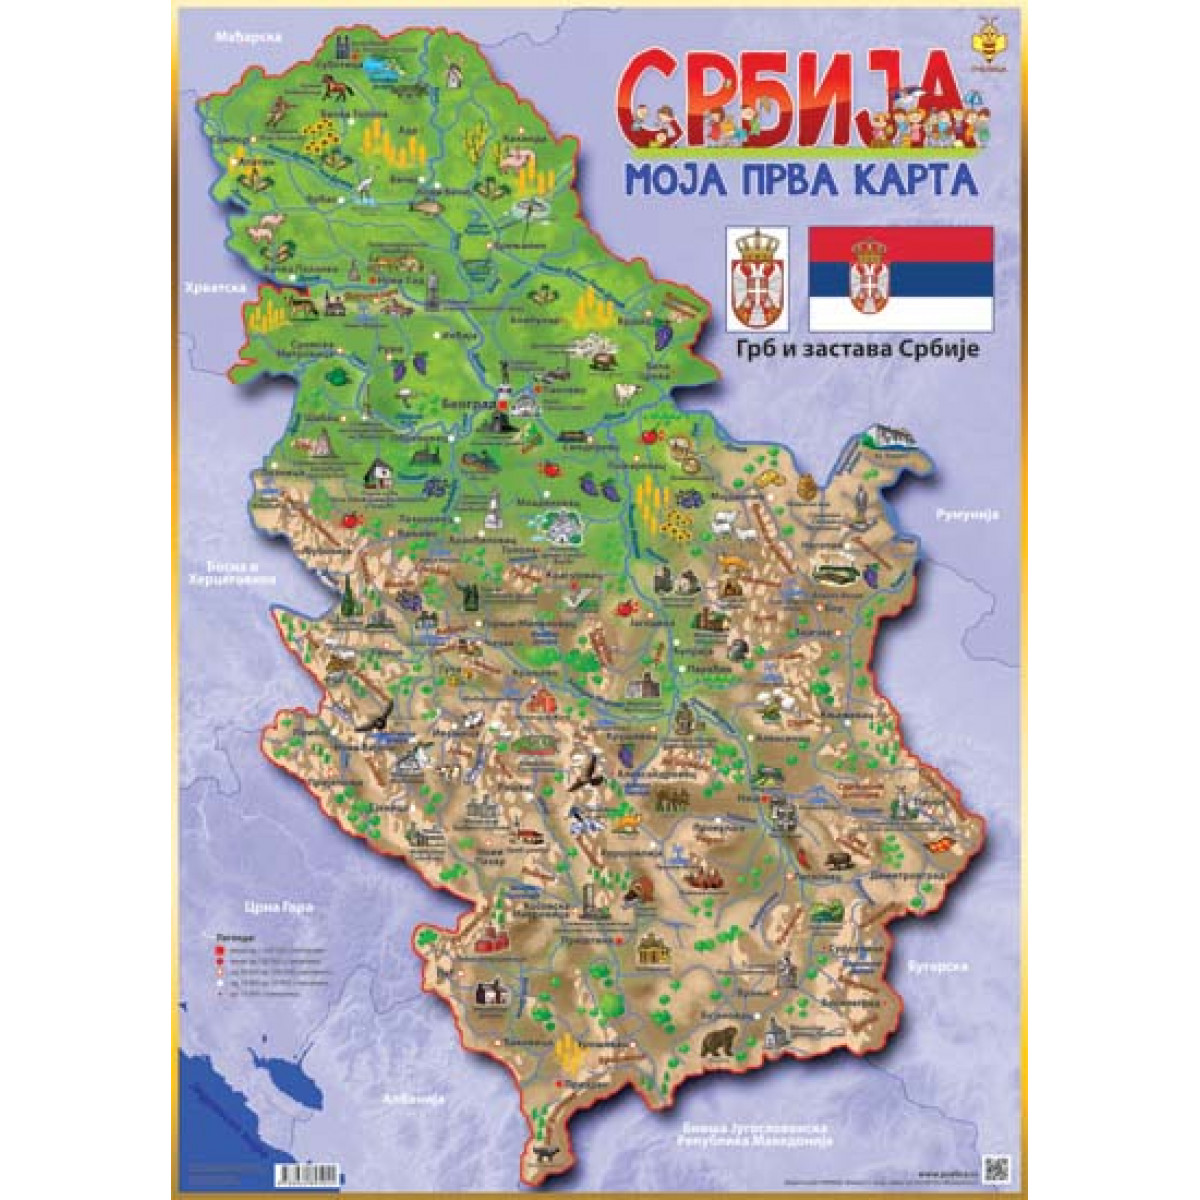 Turisticka Mapa Srbije